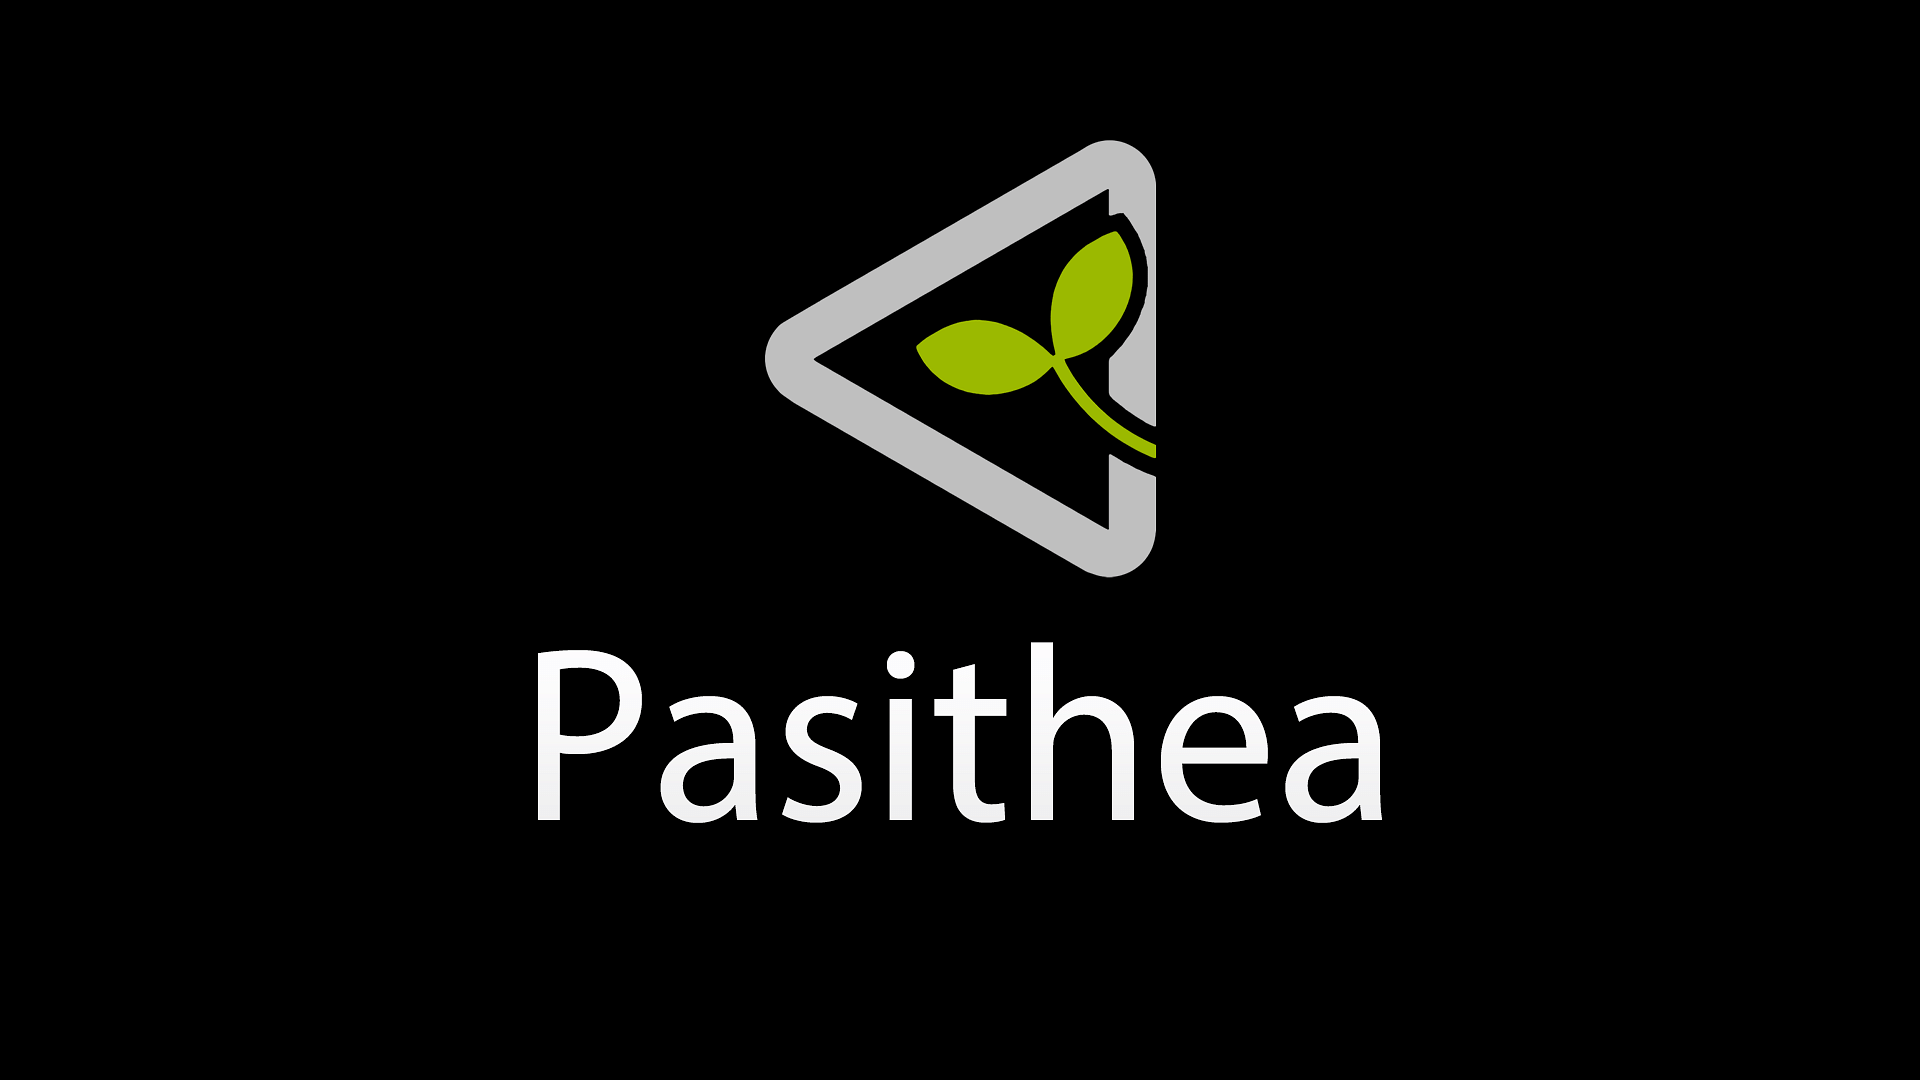 Pasithea 2 (iOS 10 to 14)